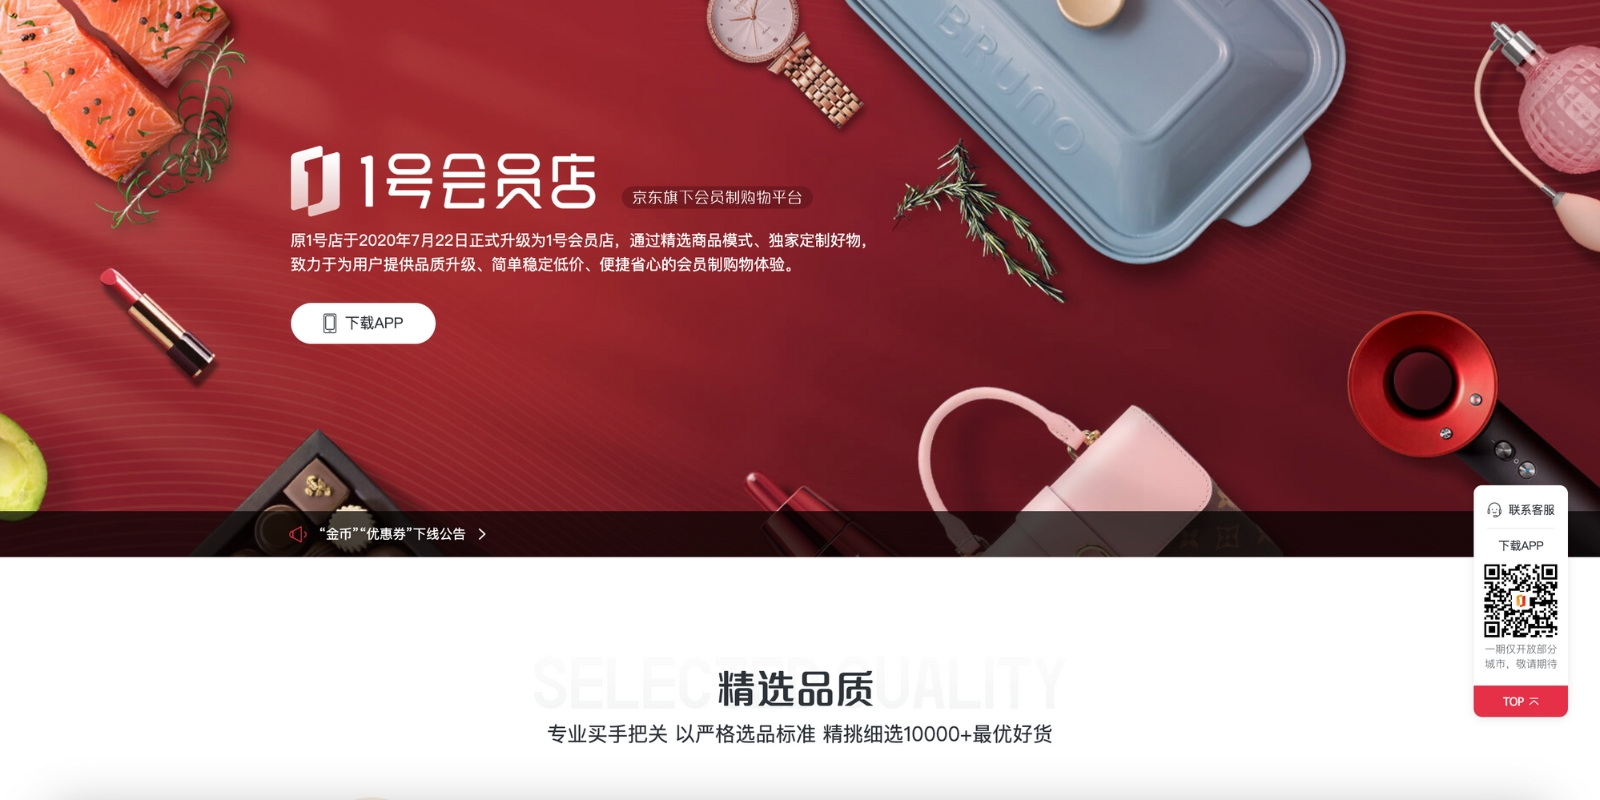 Yihaodian là sàn thương mại mại điện tử hướng đến những người yêu thích sản phẩm cao cấp